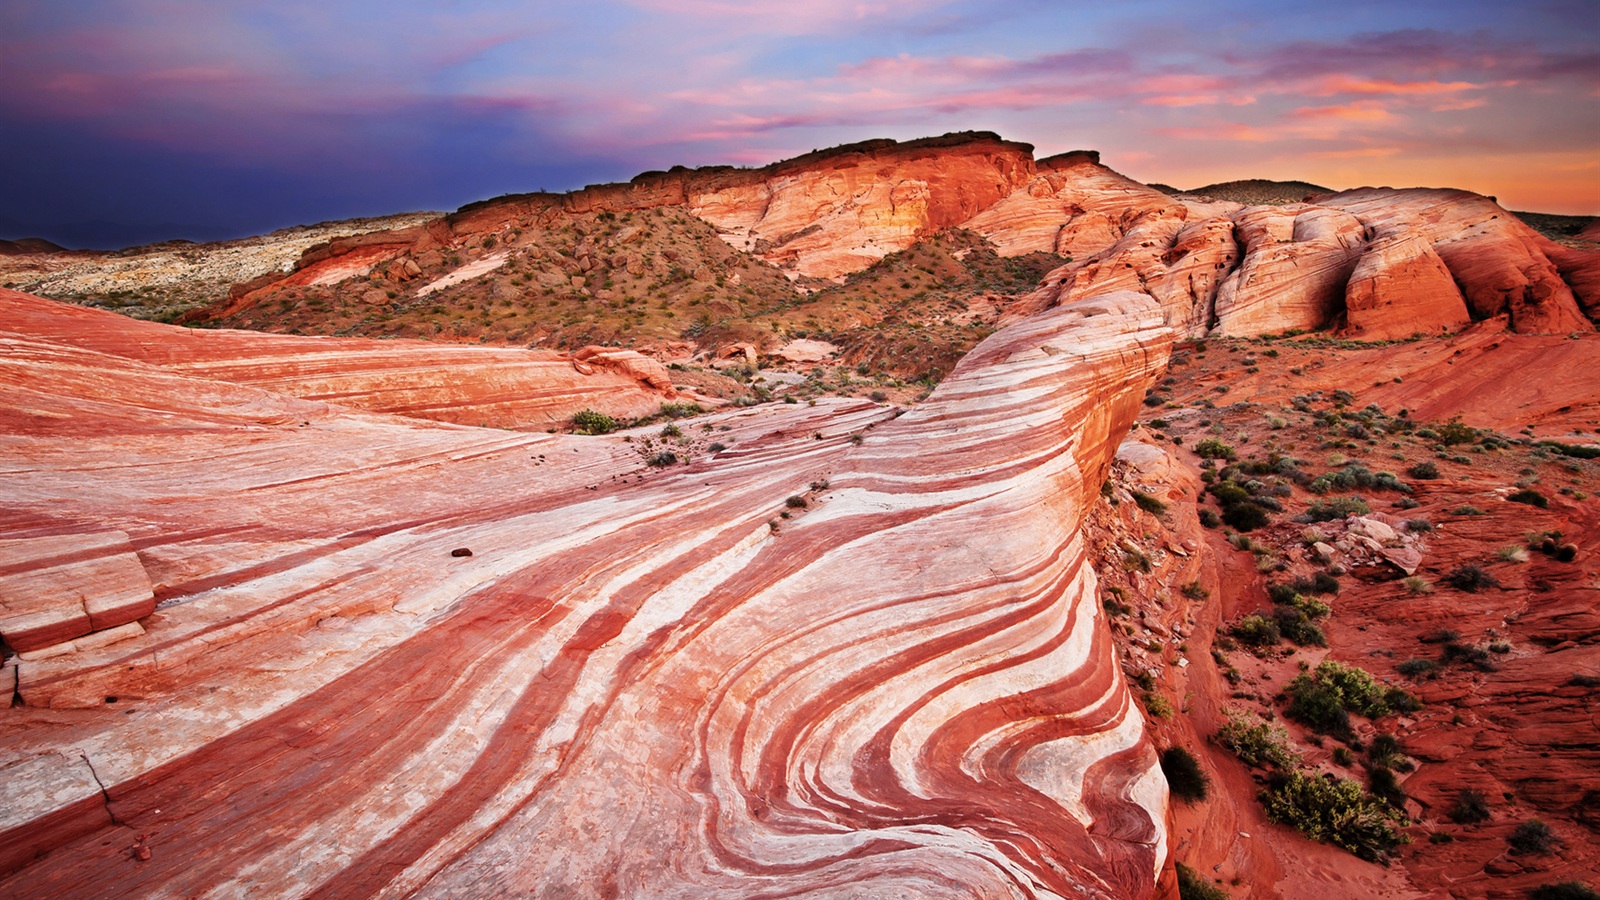 Cliff red rock desert sunset scenery Wallpaper | 1600x900 ...